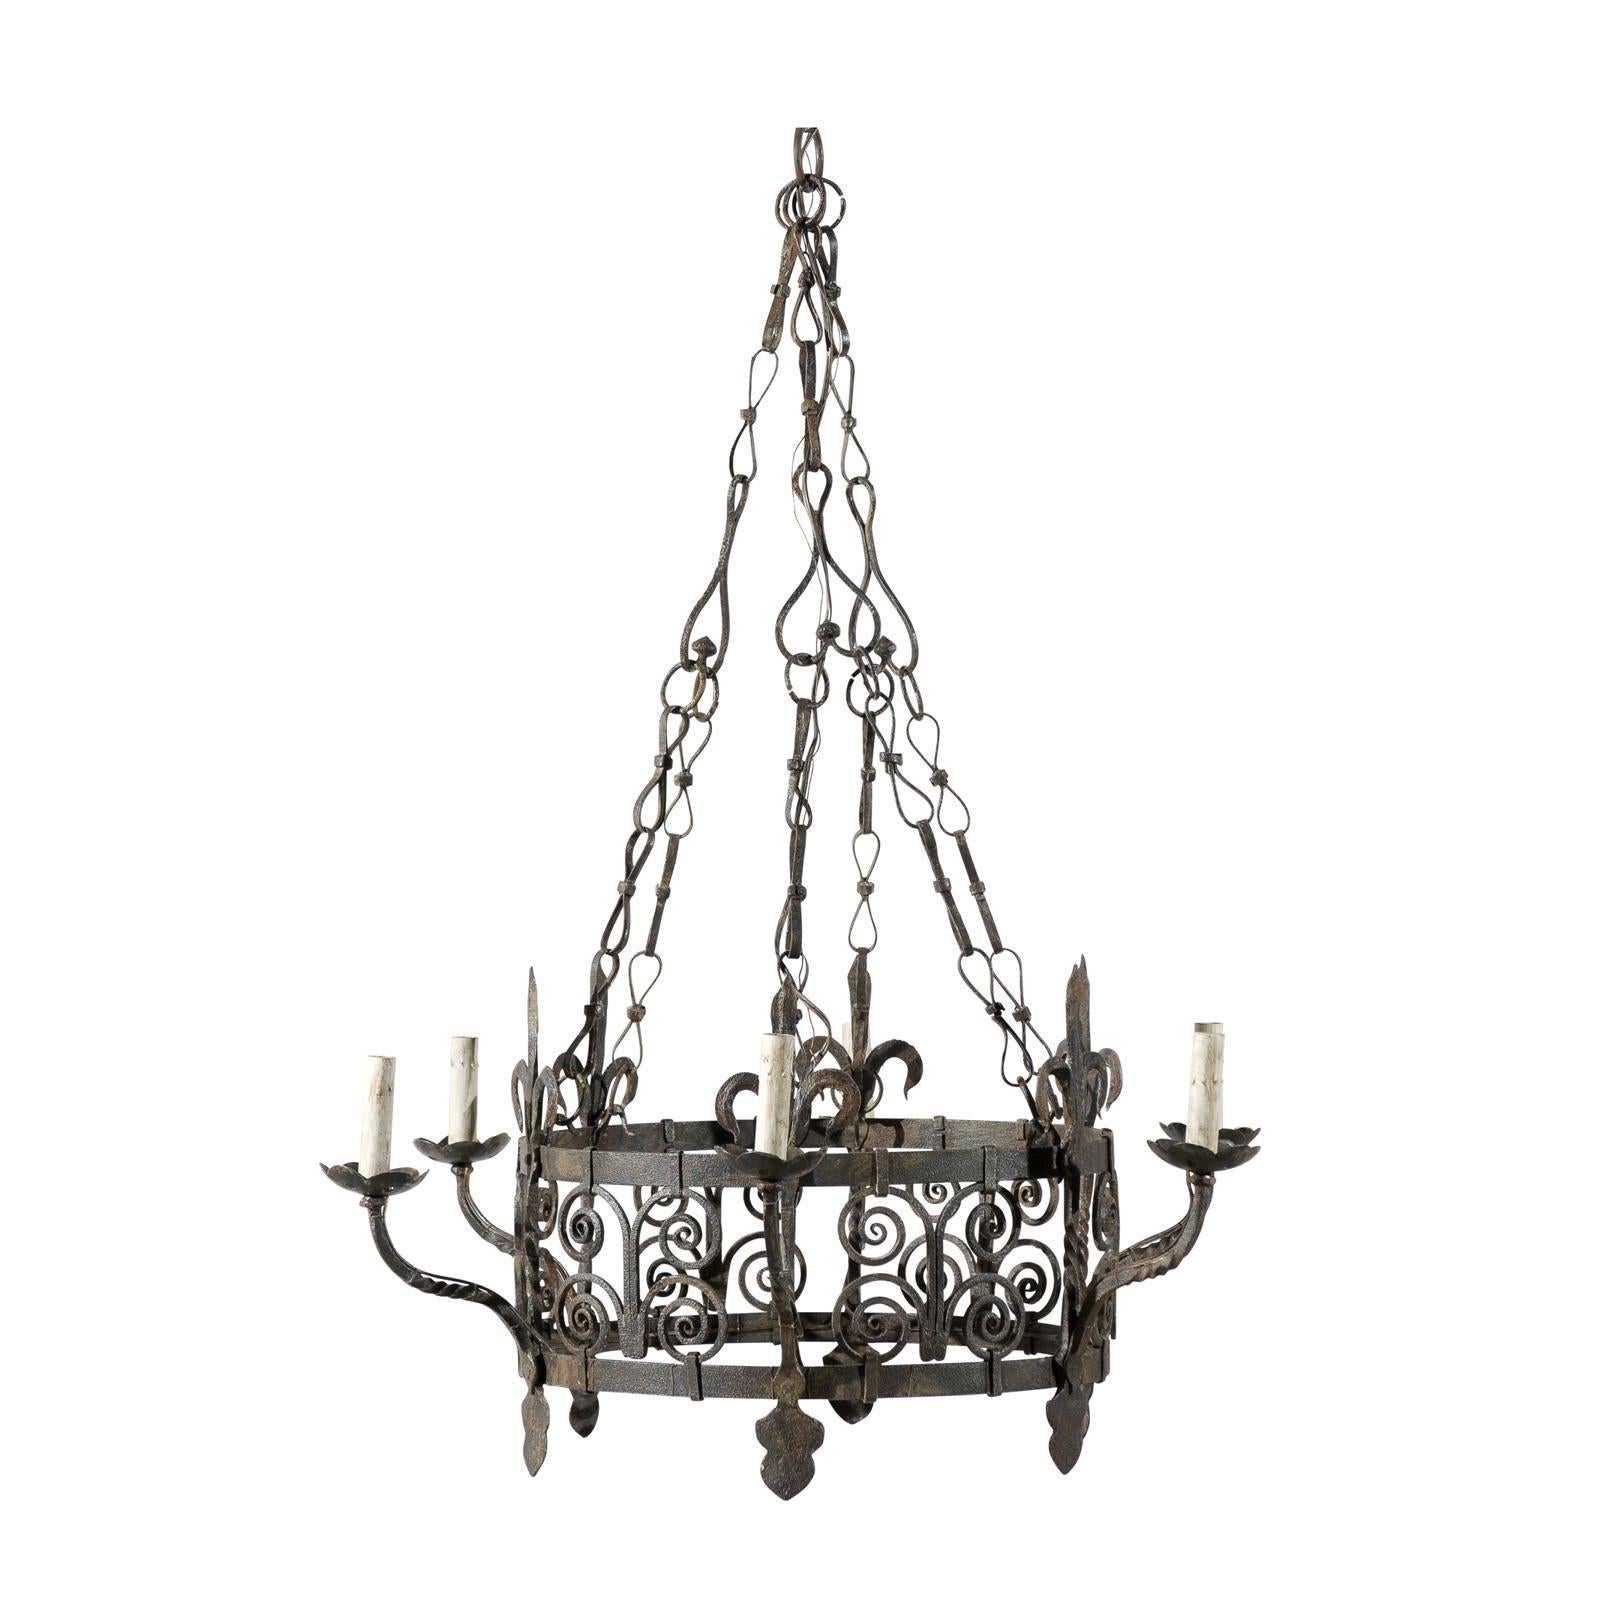 Sechs-Licht-Kronleuchter aus Eisen im gotischen Stil im Vintage-Stil